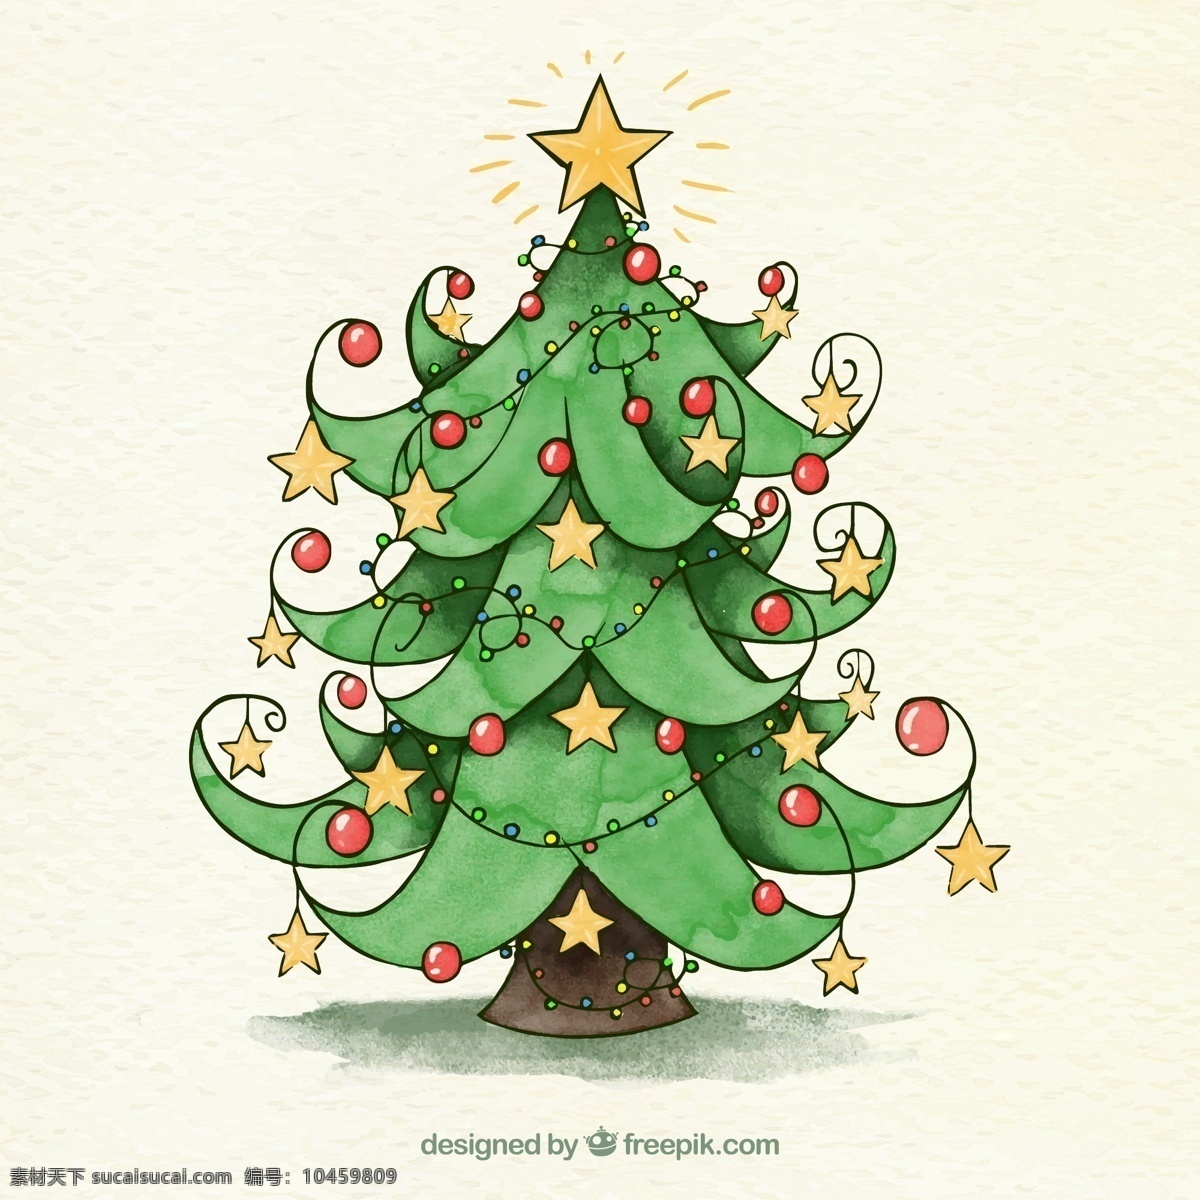 彩绘 星星 装饰 圣诞树 圣诞节 挂饰 文化艺术 节日庆祝